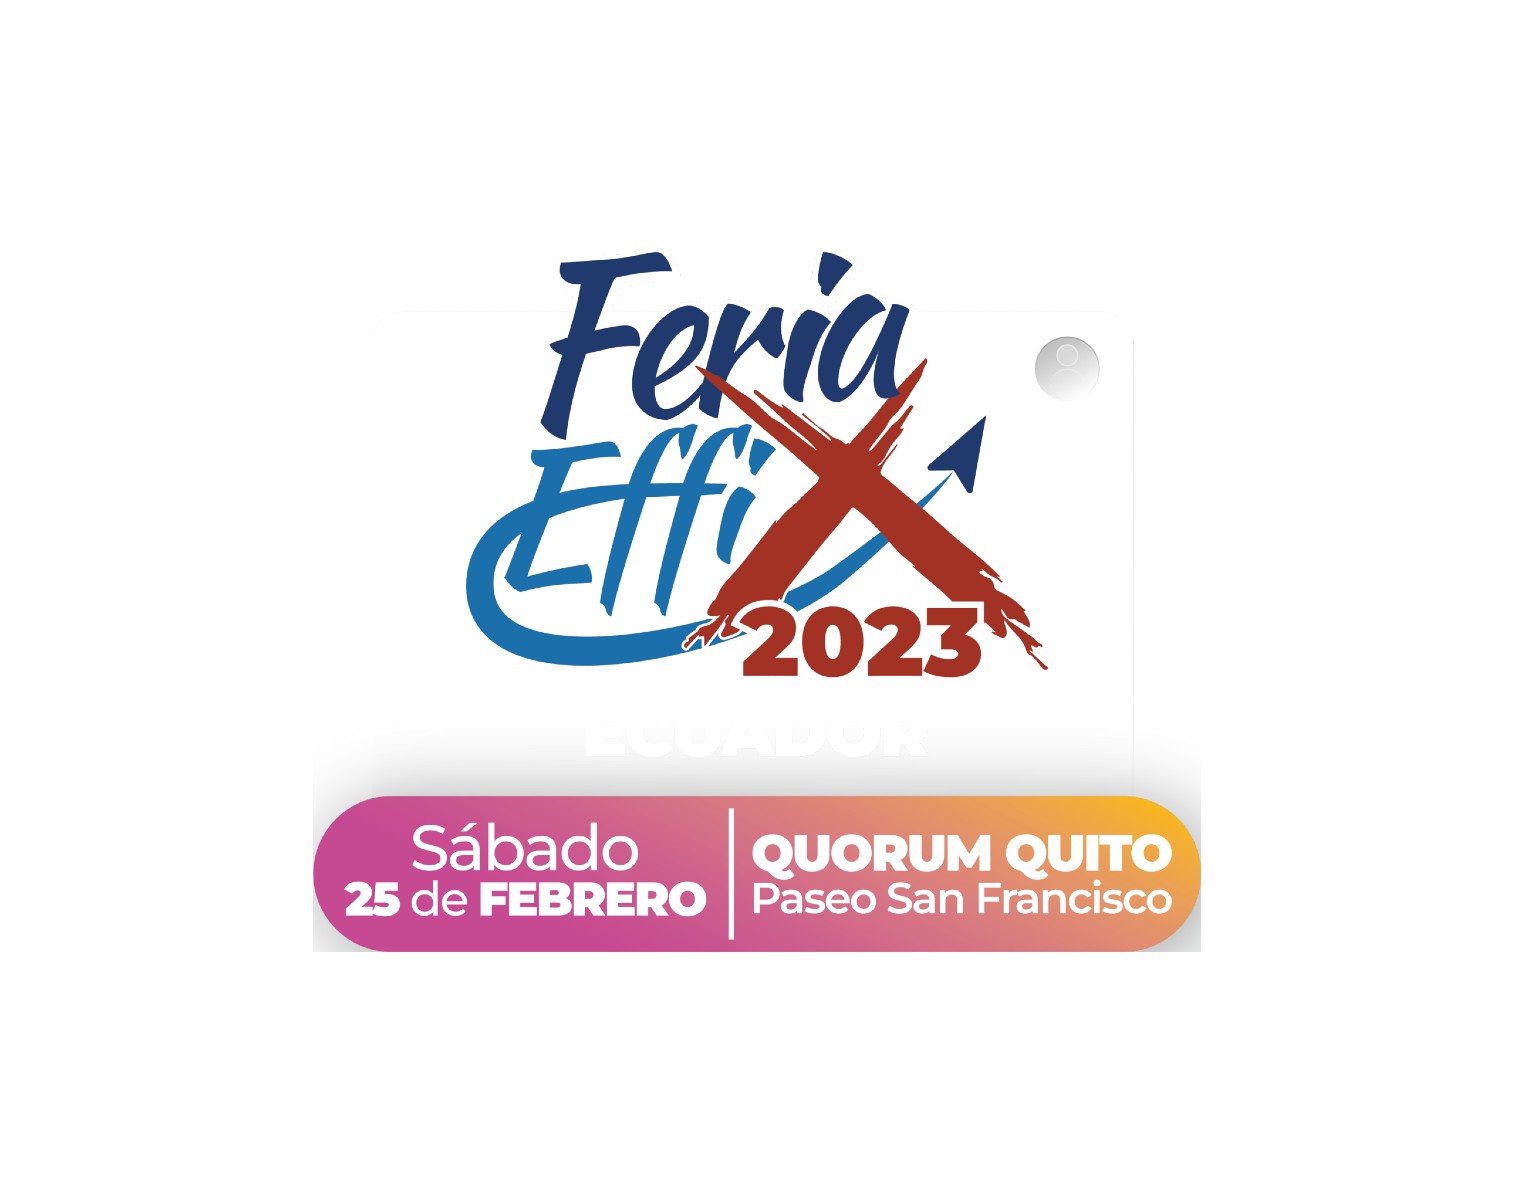 Feria Effix 2023